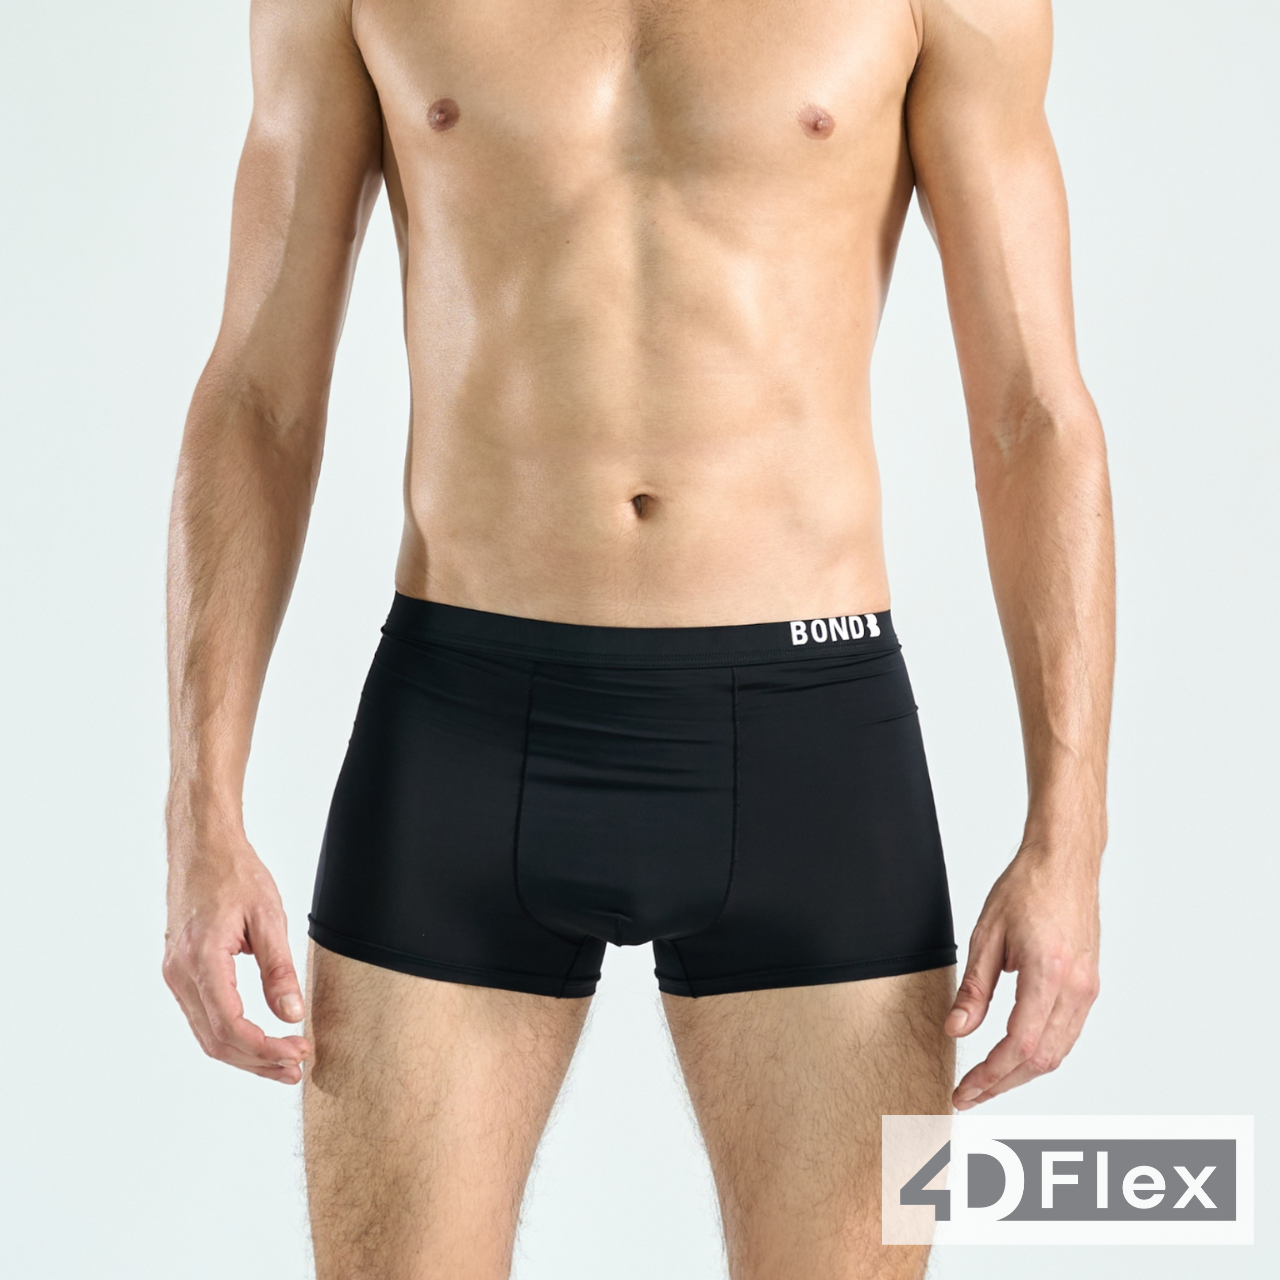 Underwear 4D Flex